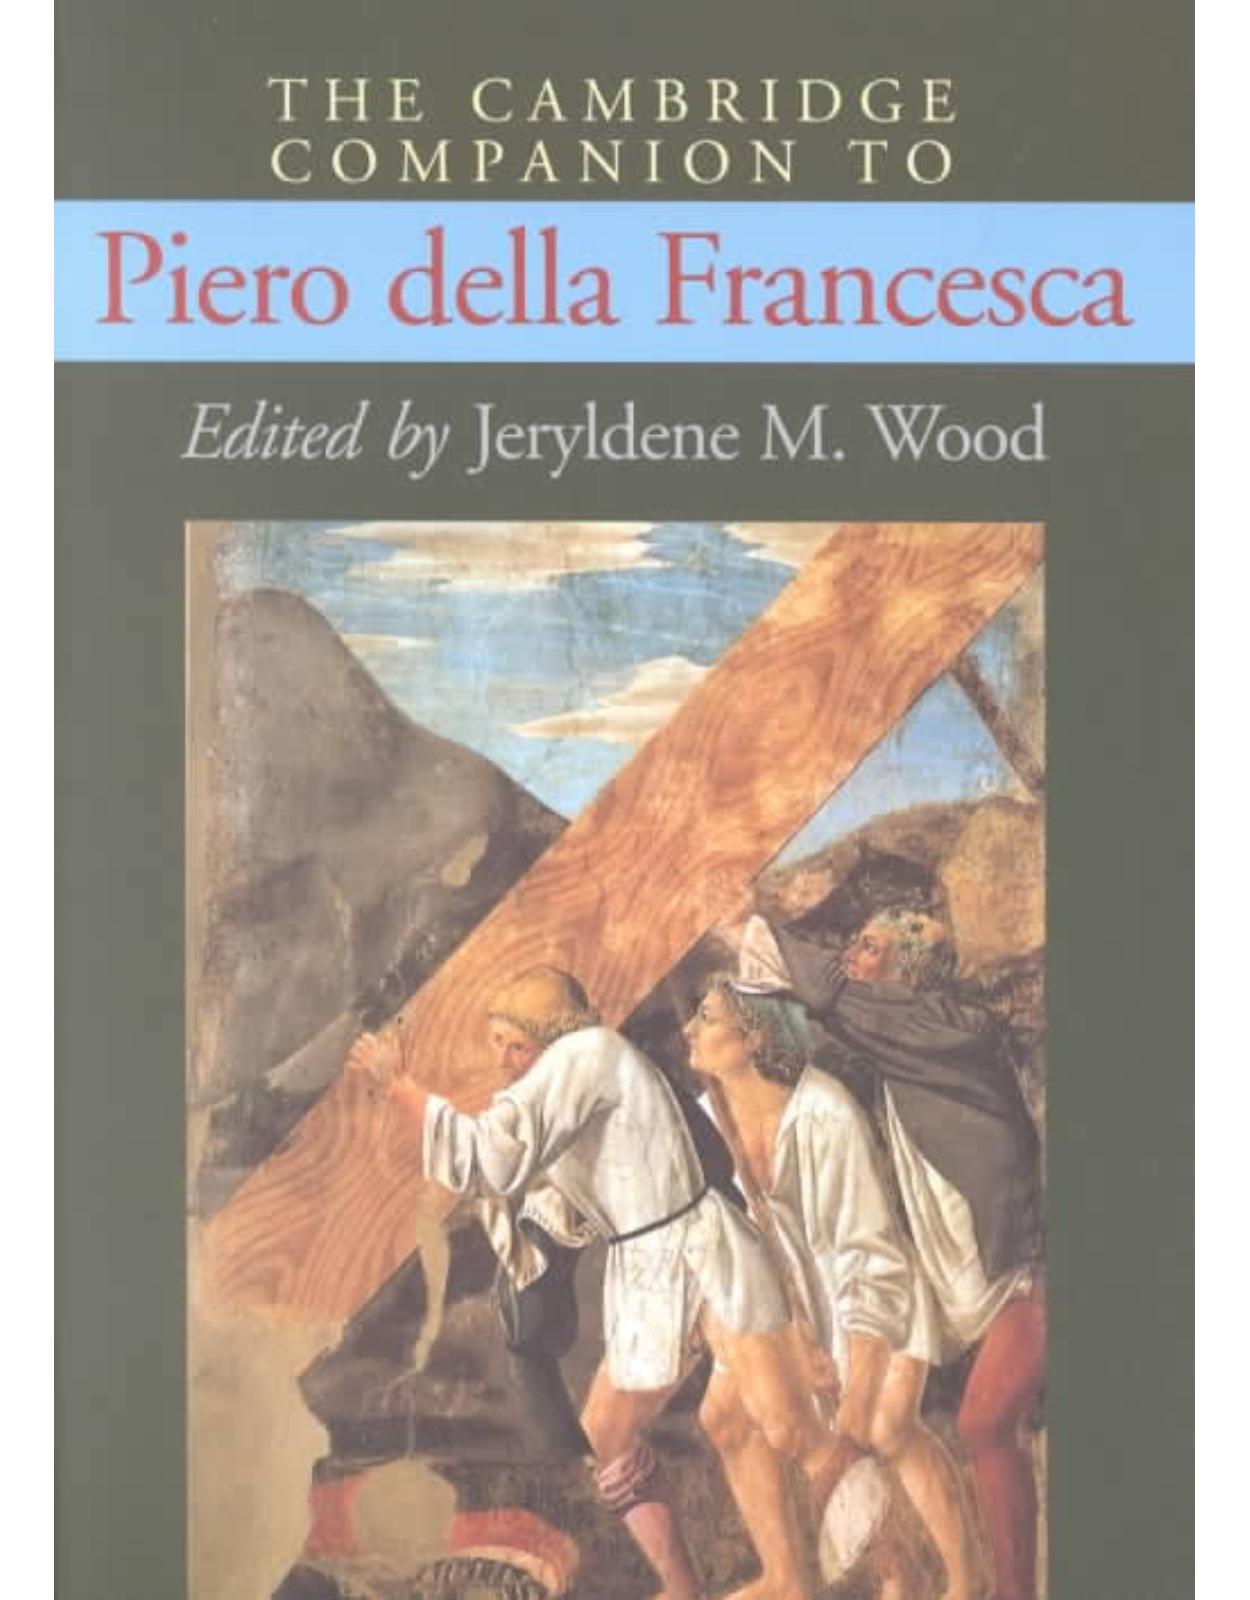 The Cambridge Companion to Piero della Francesca (Cambridge Companions to the History of Art)